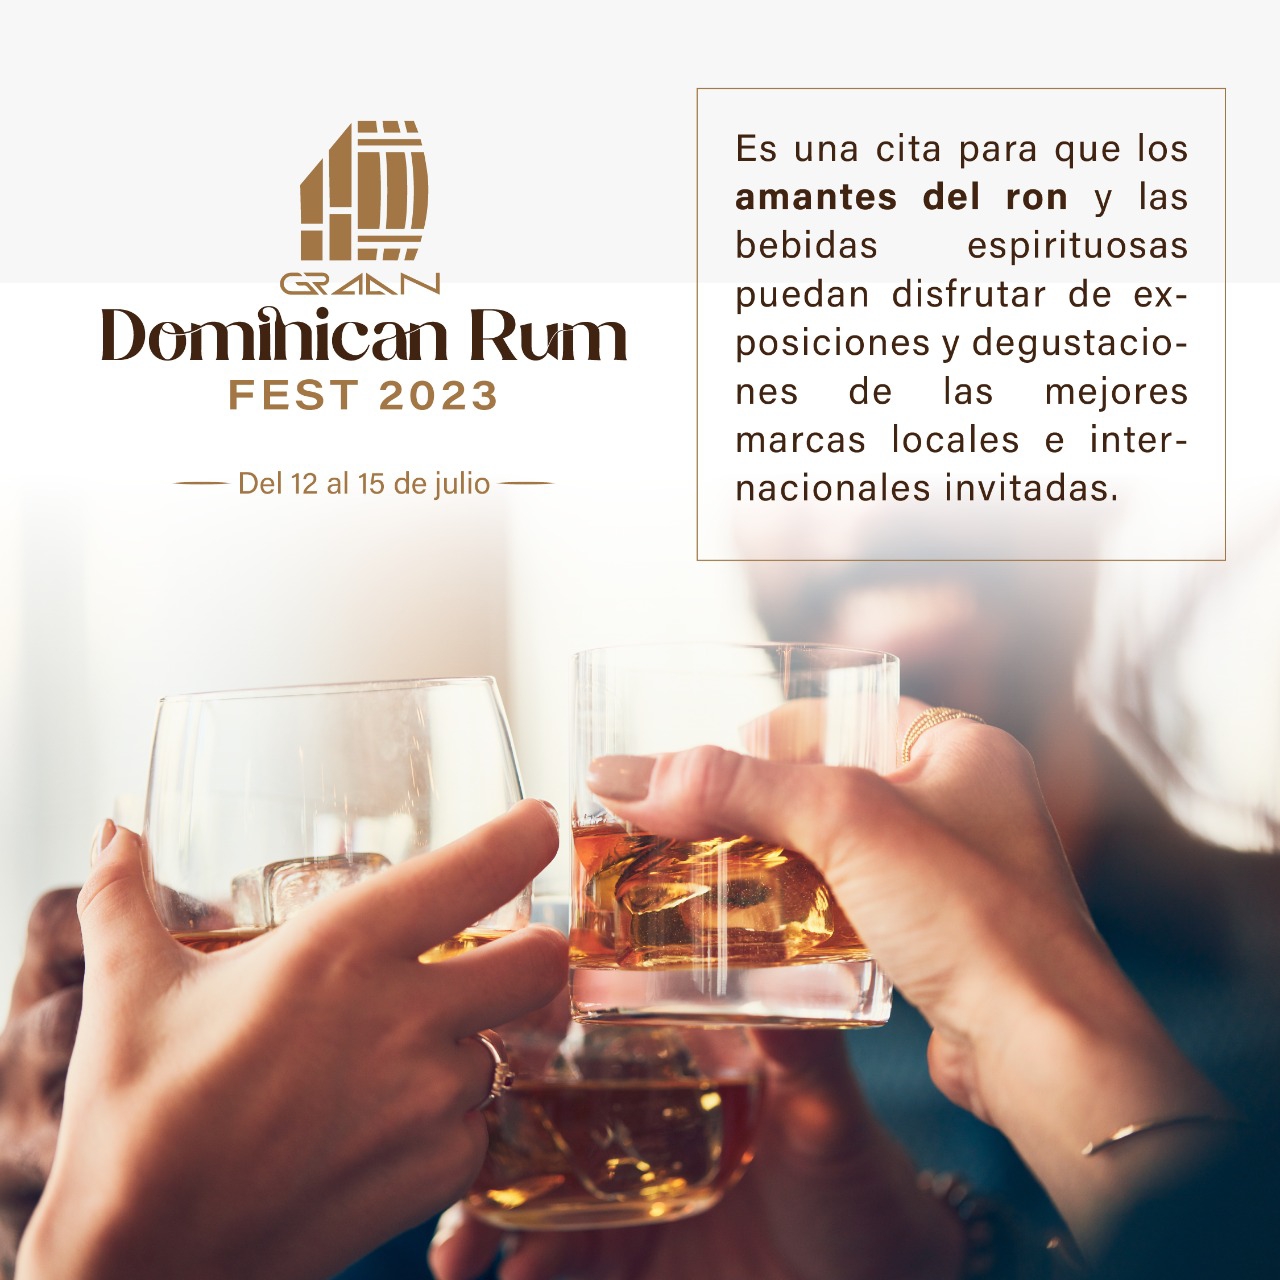 El Dominican Rum Fest 2023 será del 12 al 15 de julio en cuatro ciudades del país